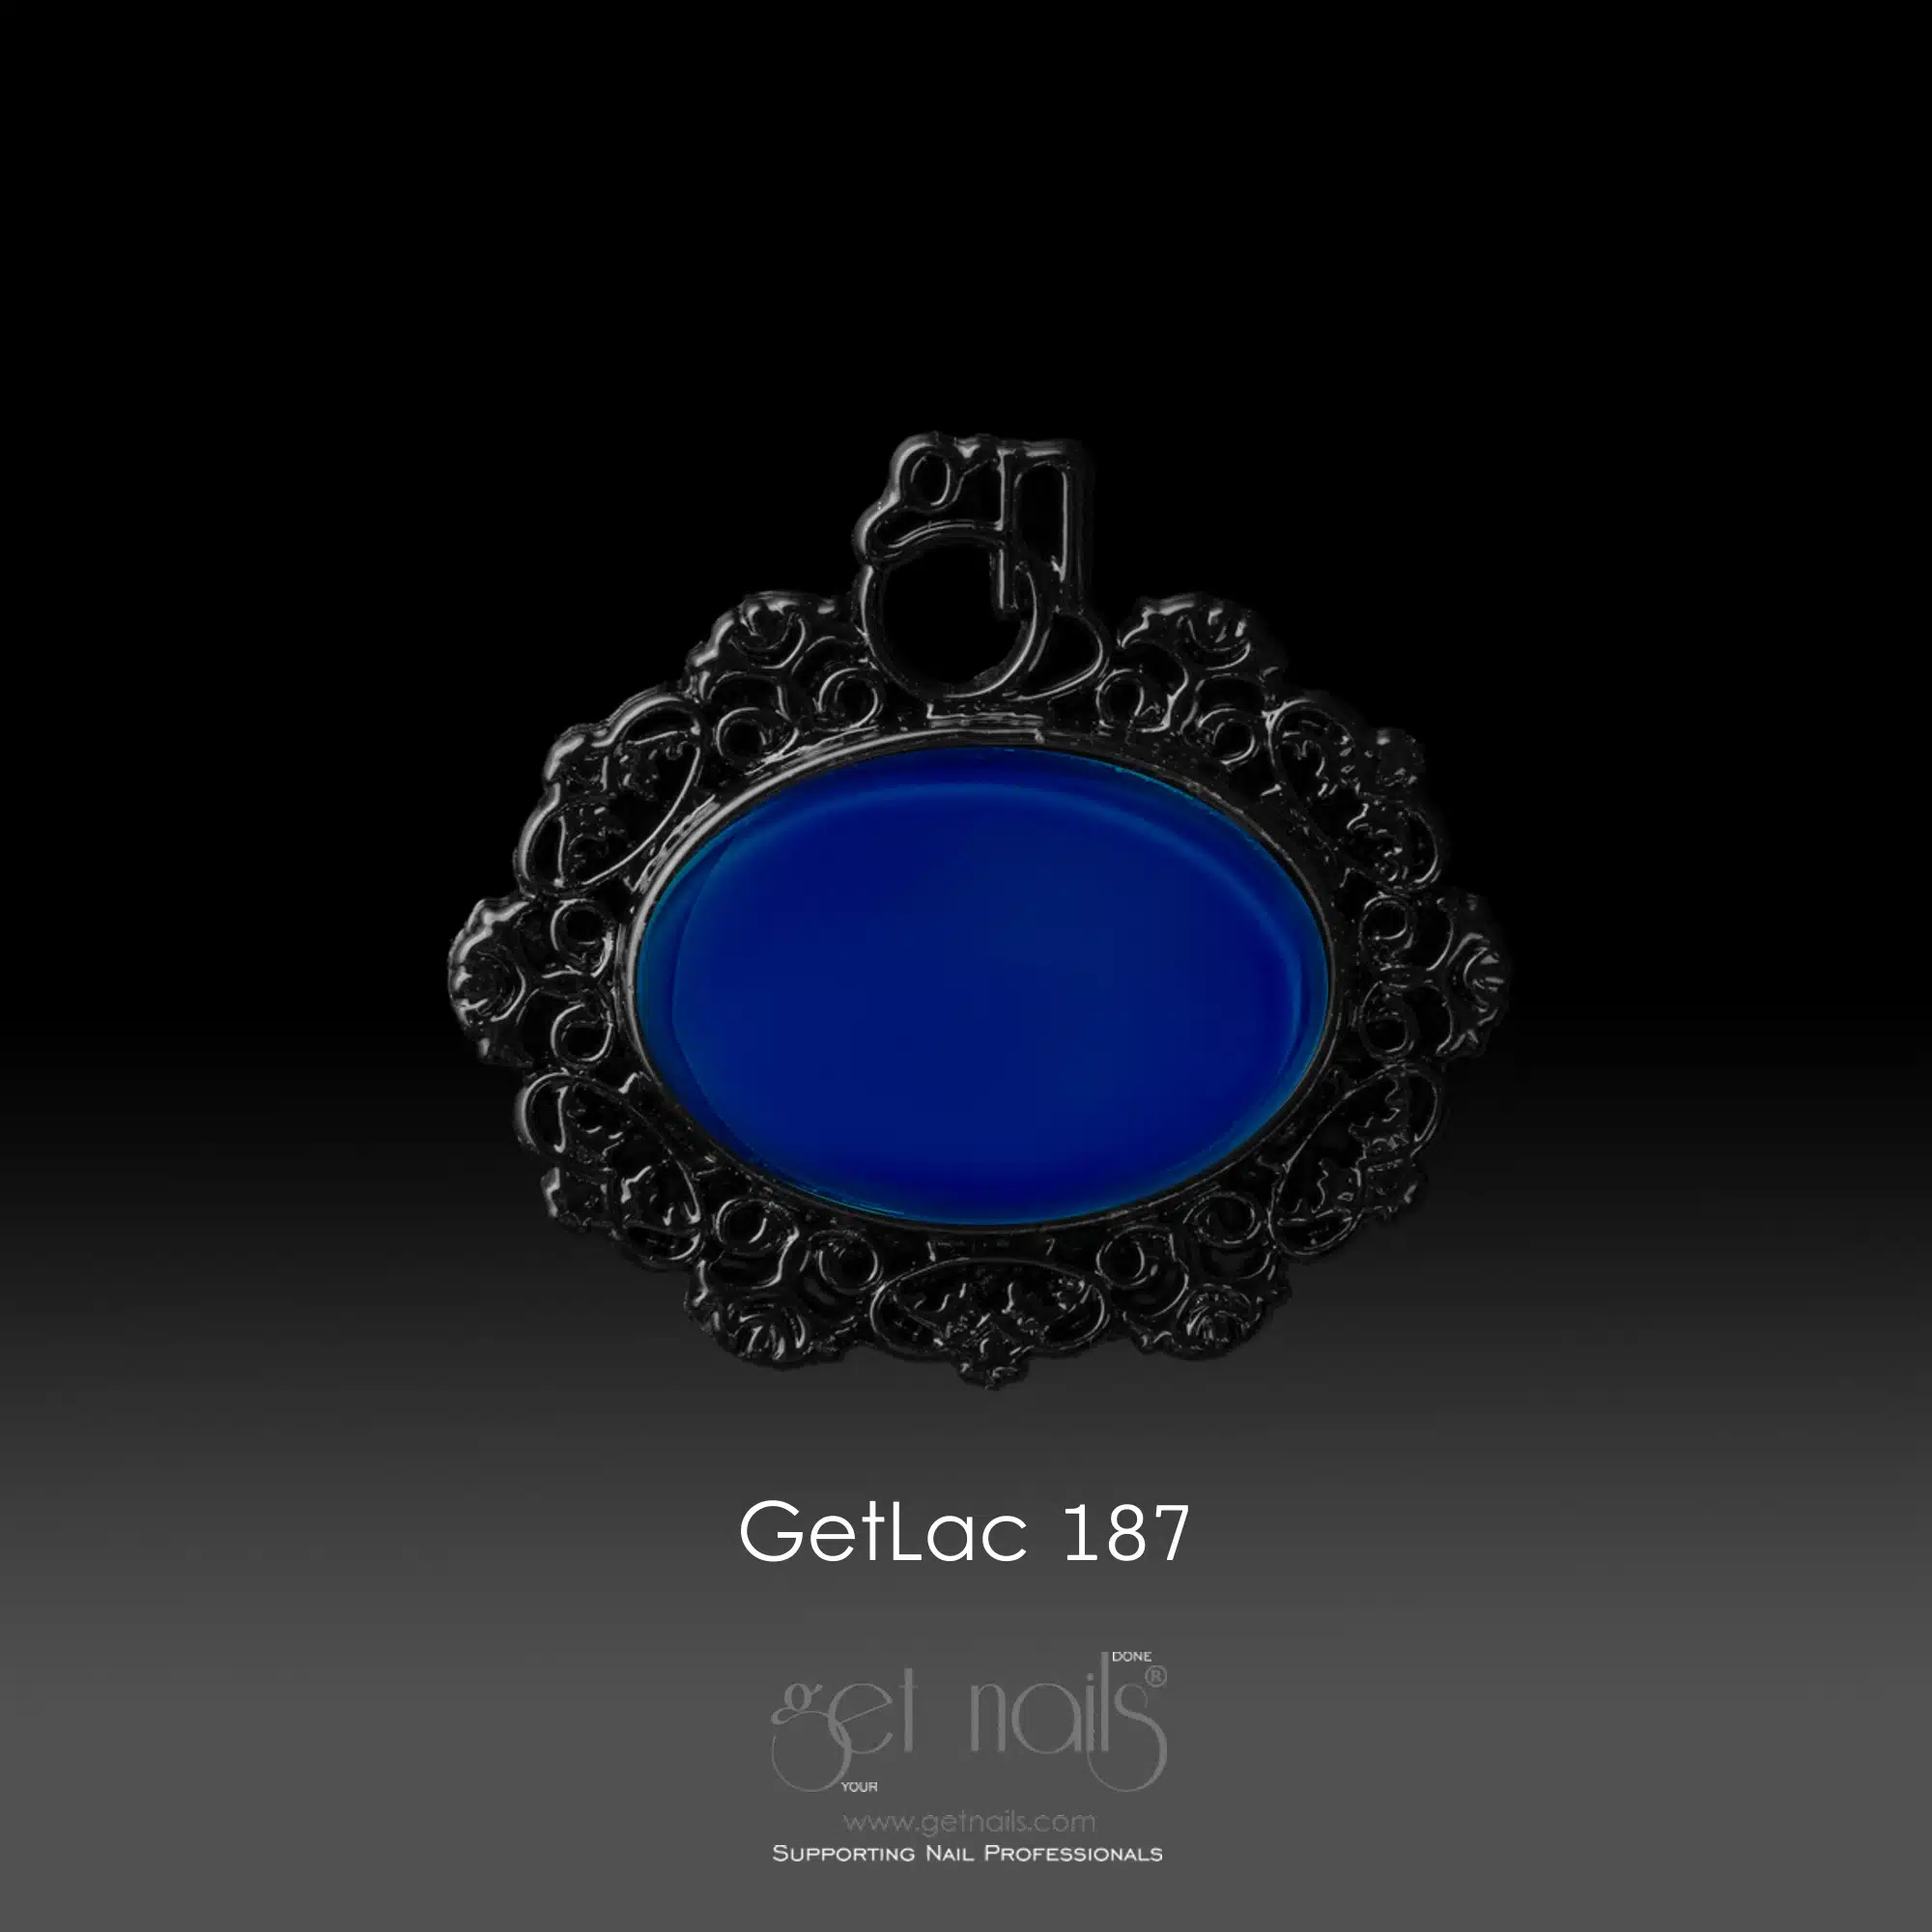 Get Nails Austria - GetLac 187 Бриллиантовый синий 15г